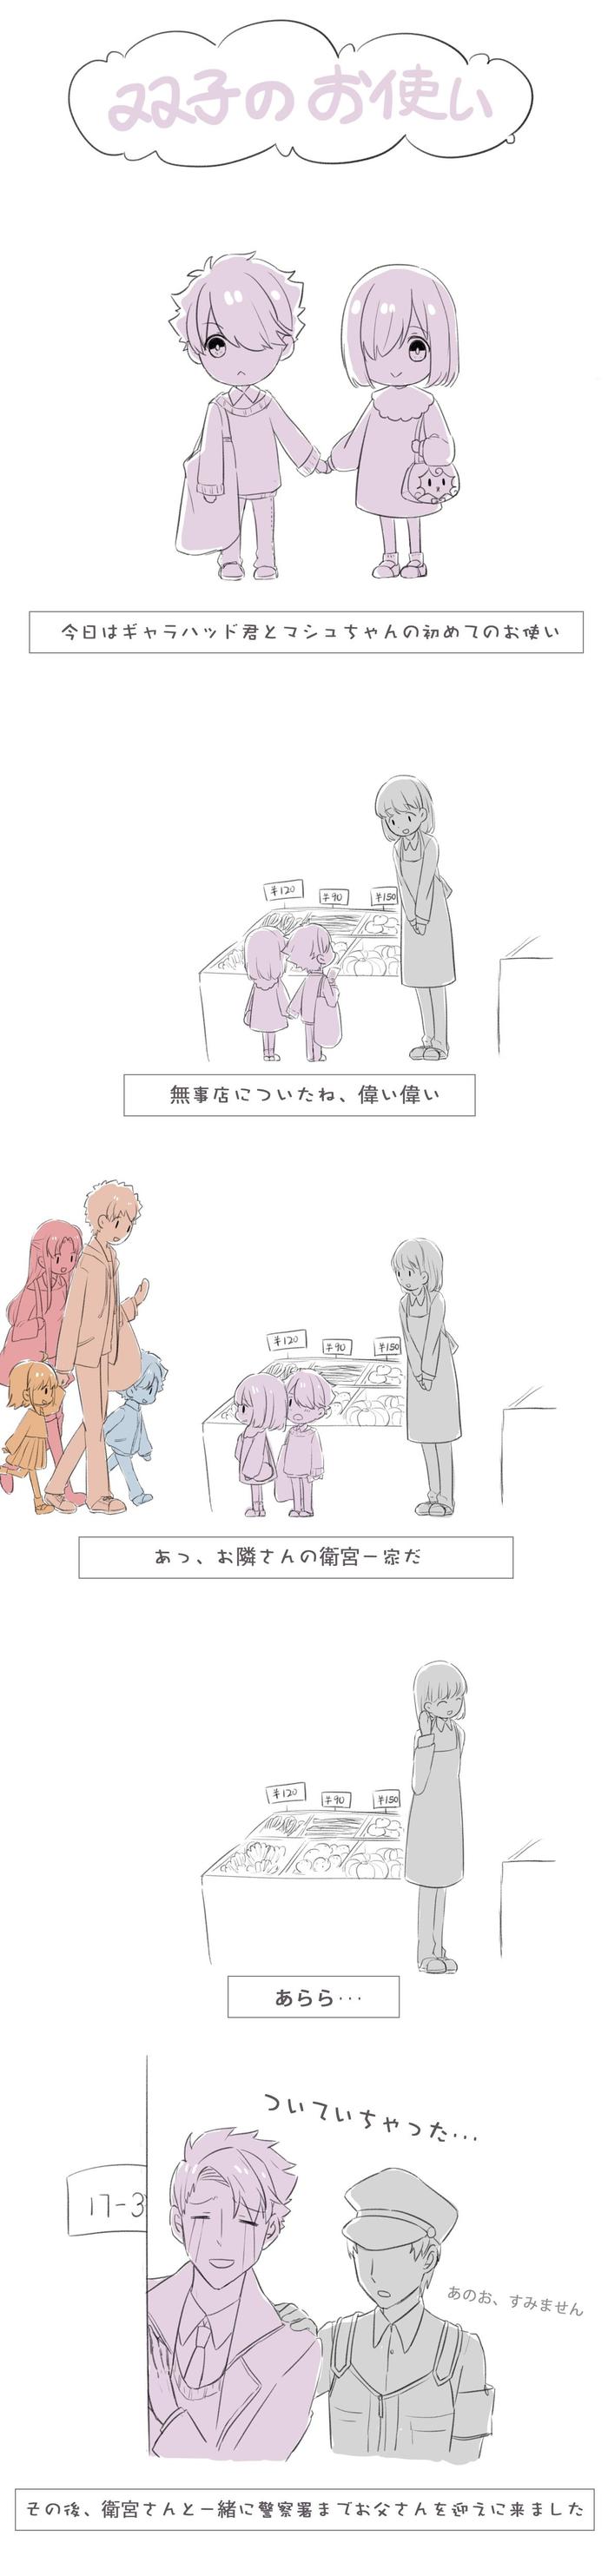 士凛&犬神家族插画图片壁纸